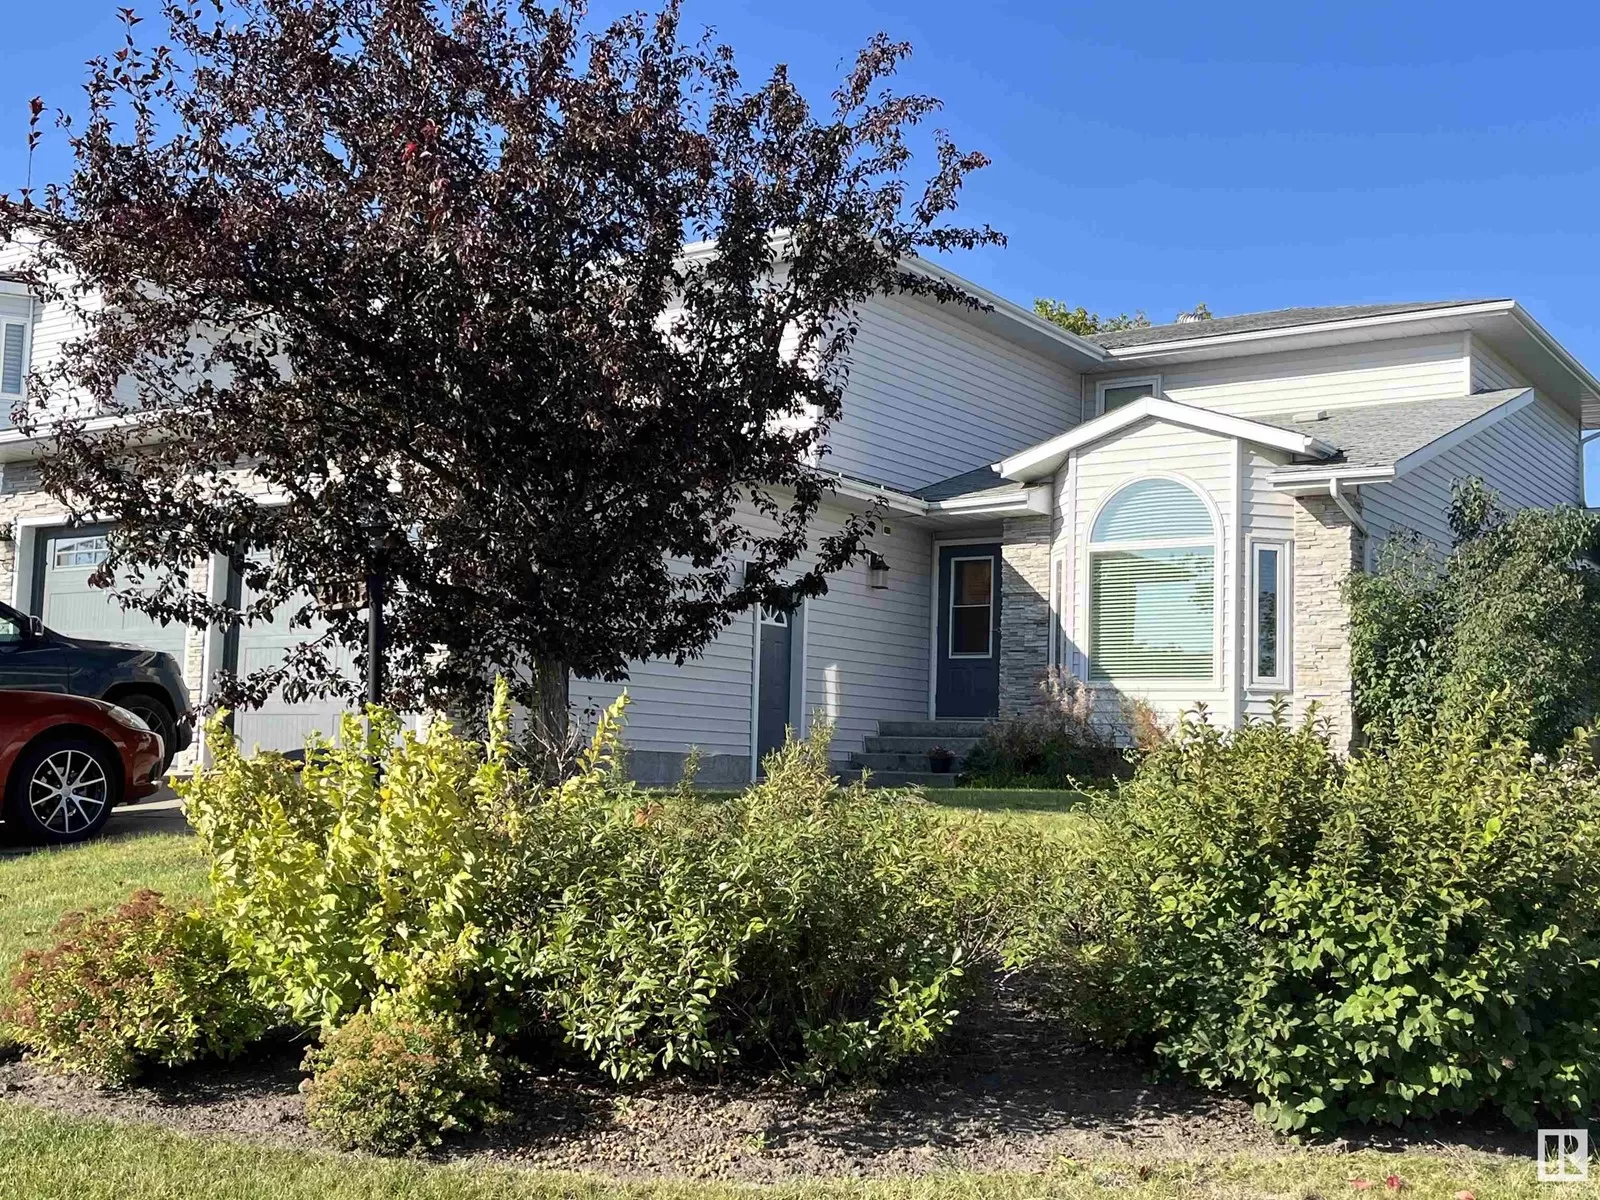 House for rent: 4126 46 St, Vegreville, Alberta T9C 1C2